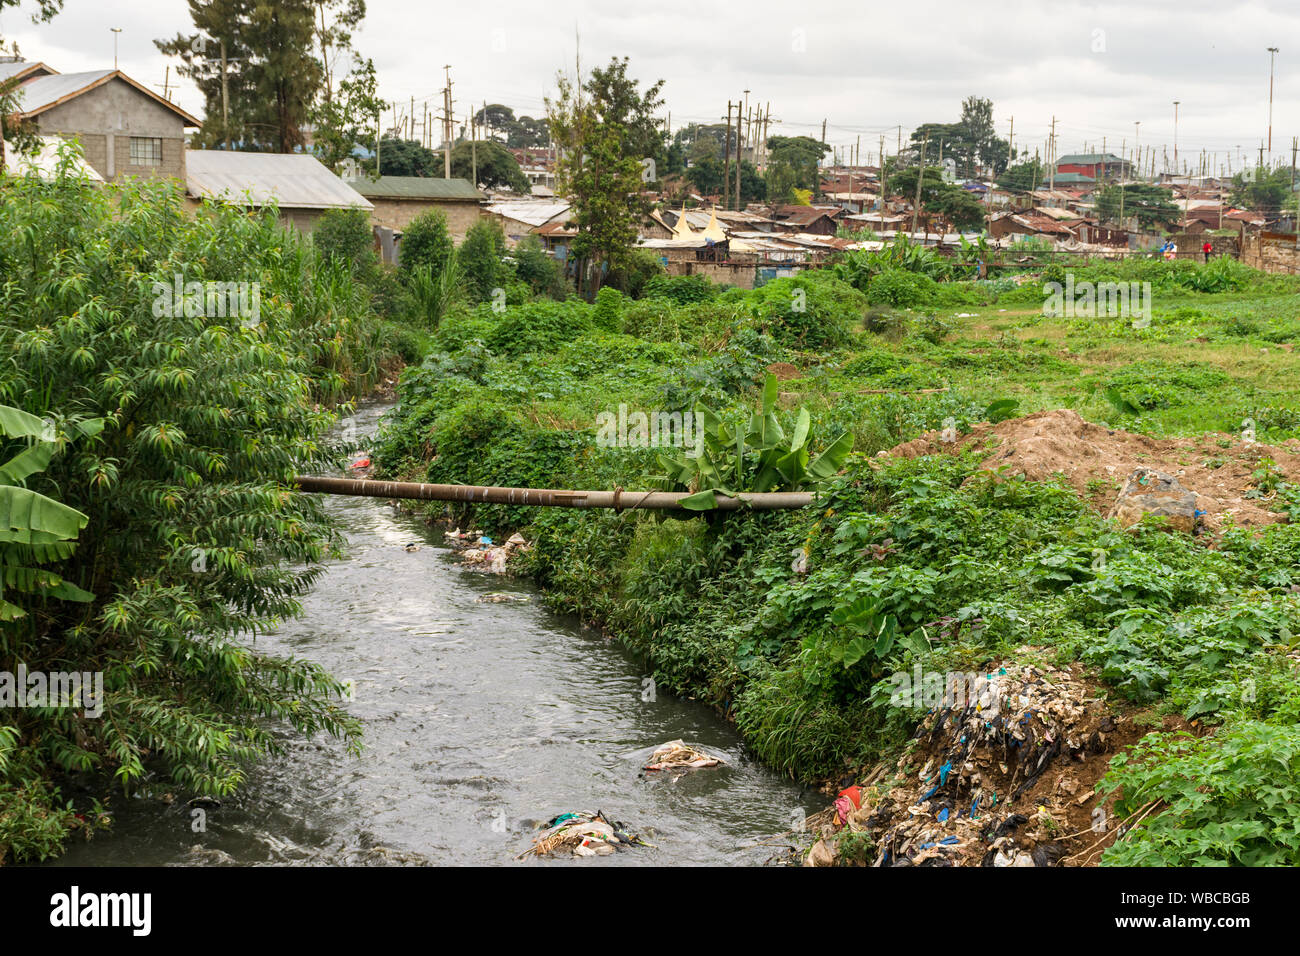 Mathare river with rubbish in it running past housing, Nairobi, Kenya Stock Photo